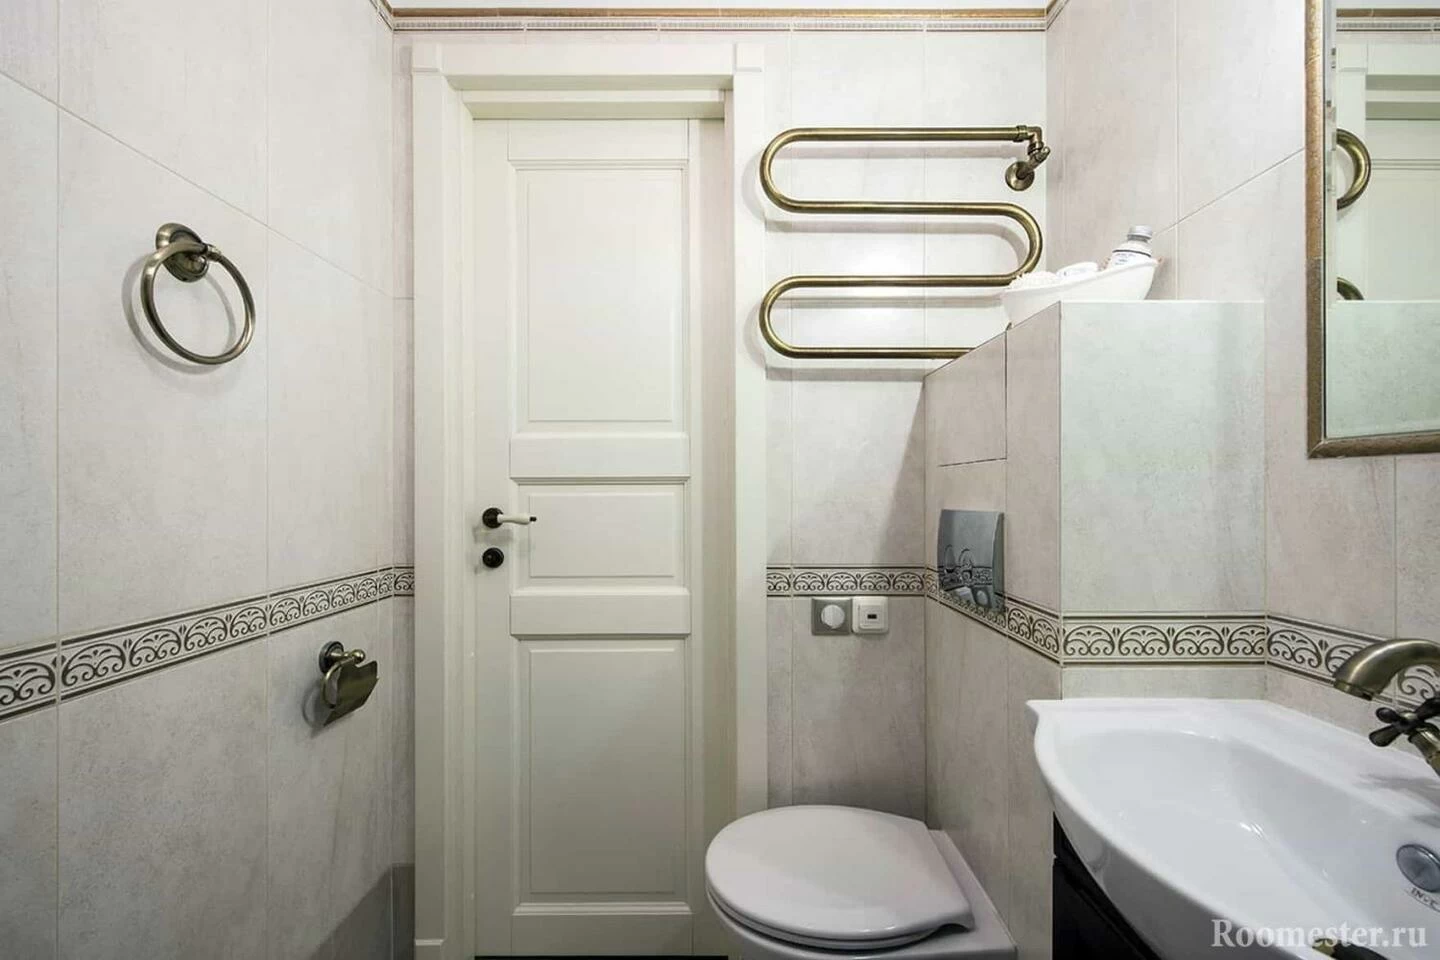 плитка для ванной комнаты в панельном доме фото дизайн